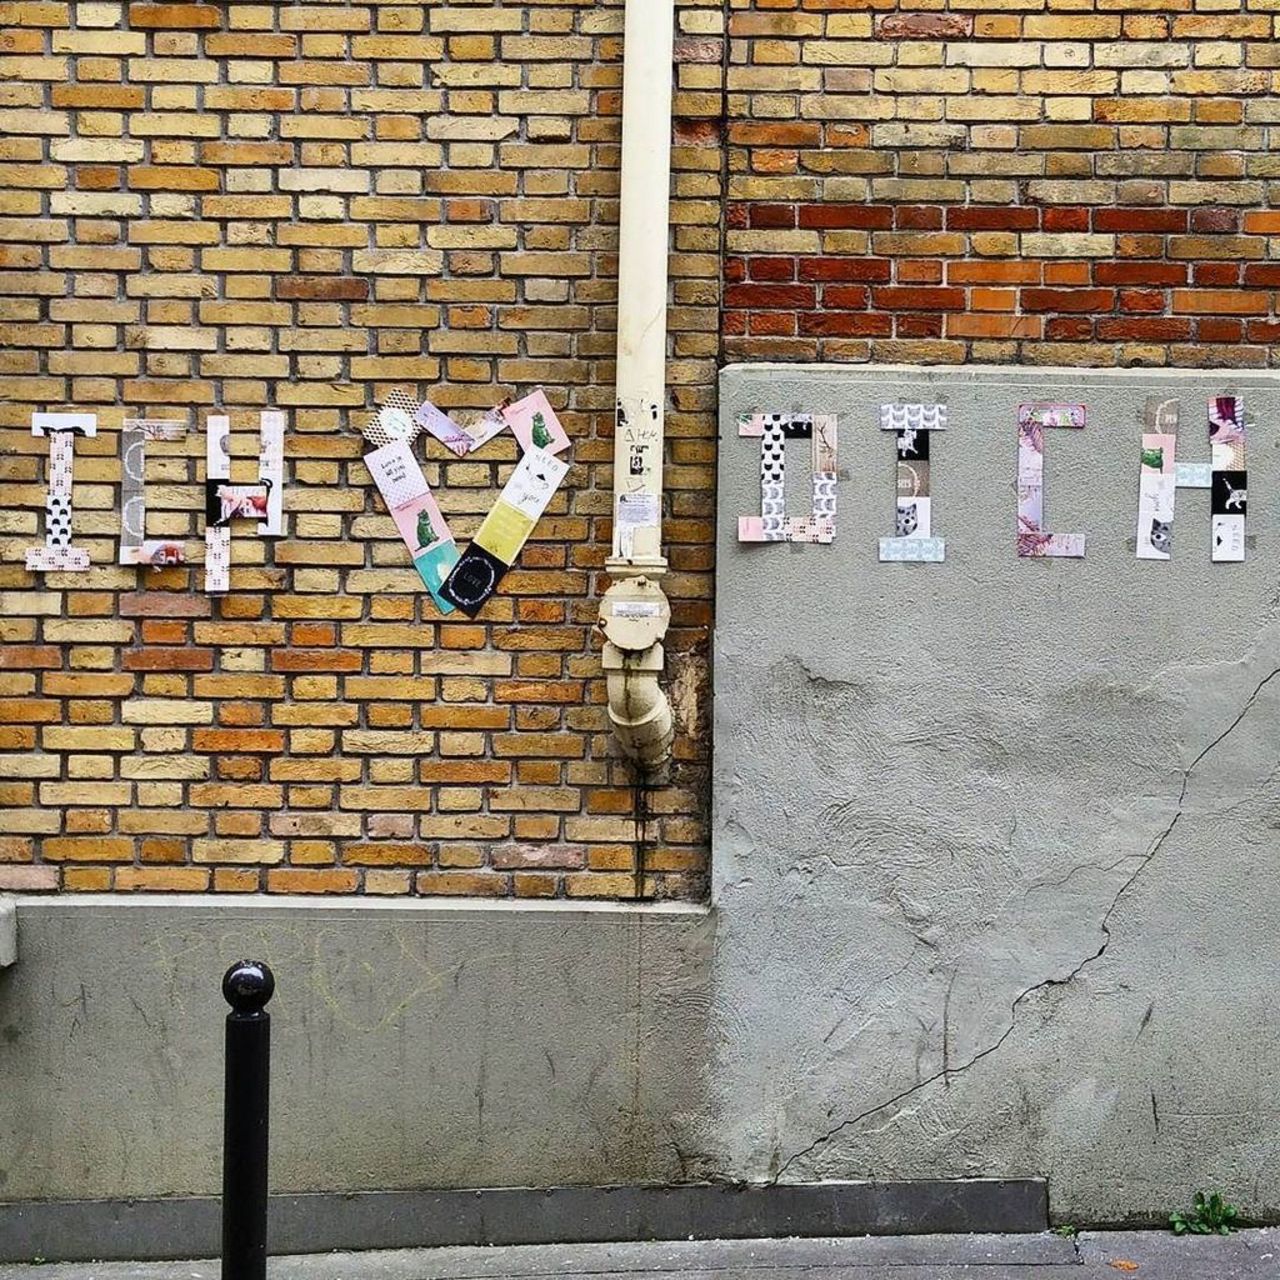 German quote in Paris "Ich liebe dich"

#streetart #streetartparis #parisstreetart #parisgraffiti #graffiti #graffi… https://t.co/57PsnMd6UU